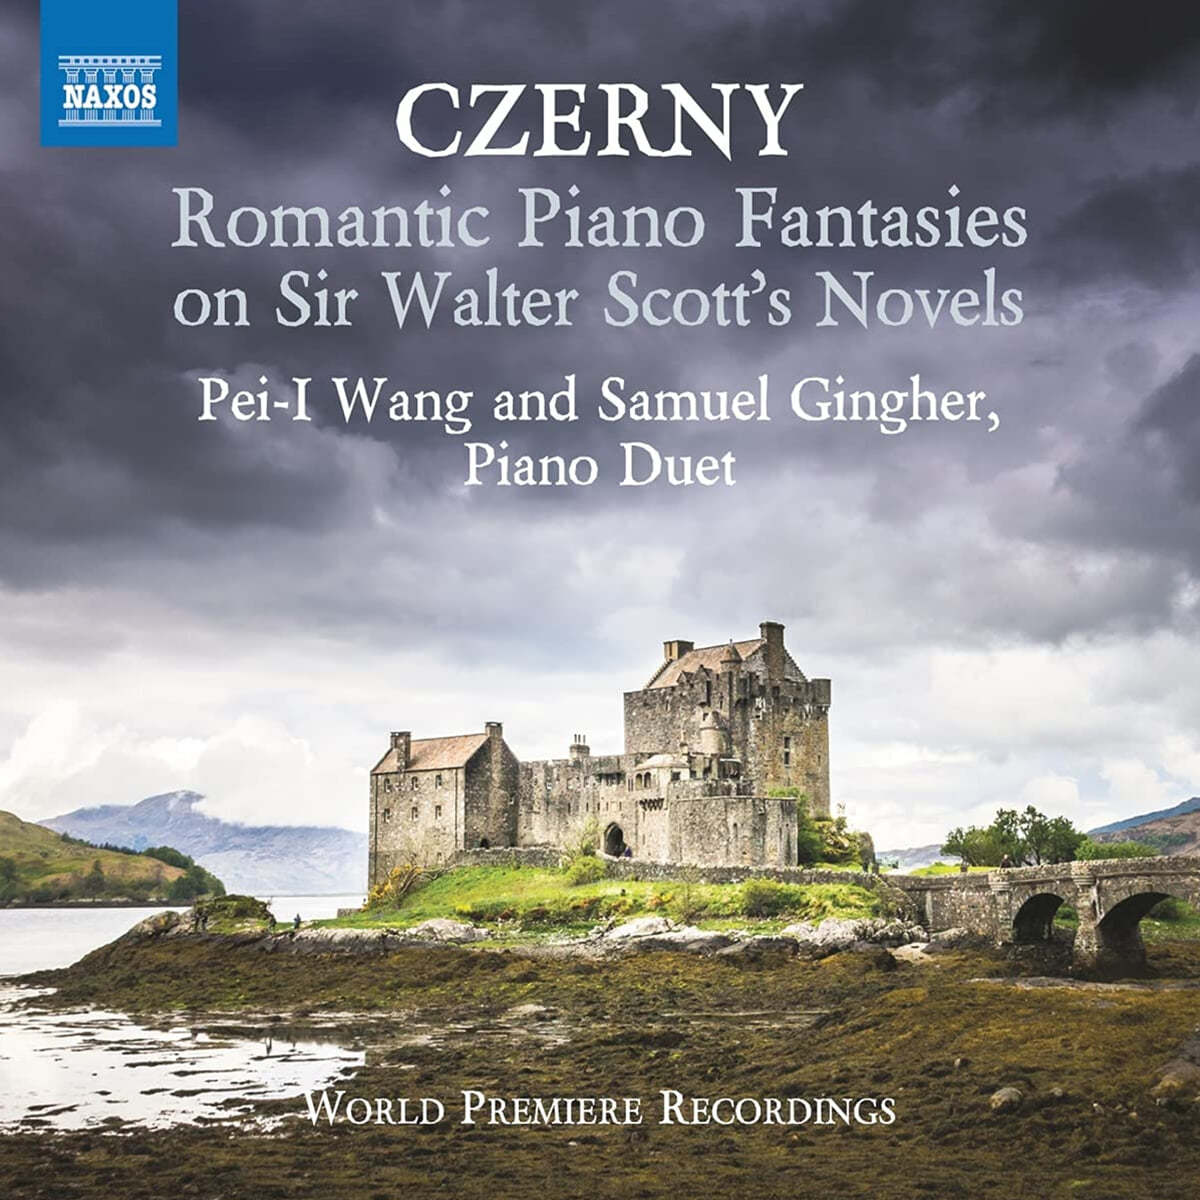 체르니: 월터 스콧의 소설에 의한 낭만적 피아노 환상곡 작품집 (Czerny: Romantic Piano Fantasies on Sir Walter Scott&#39;s Novels) 